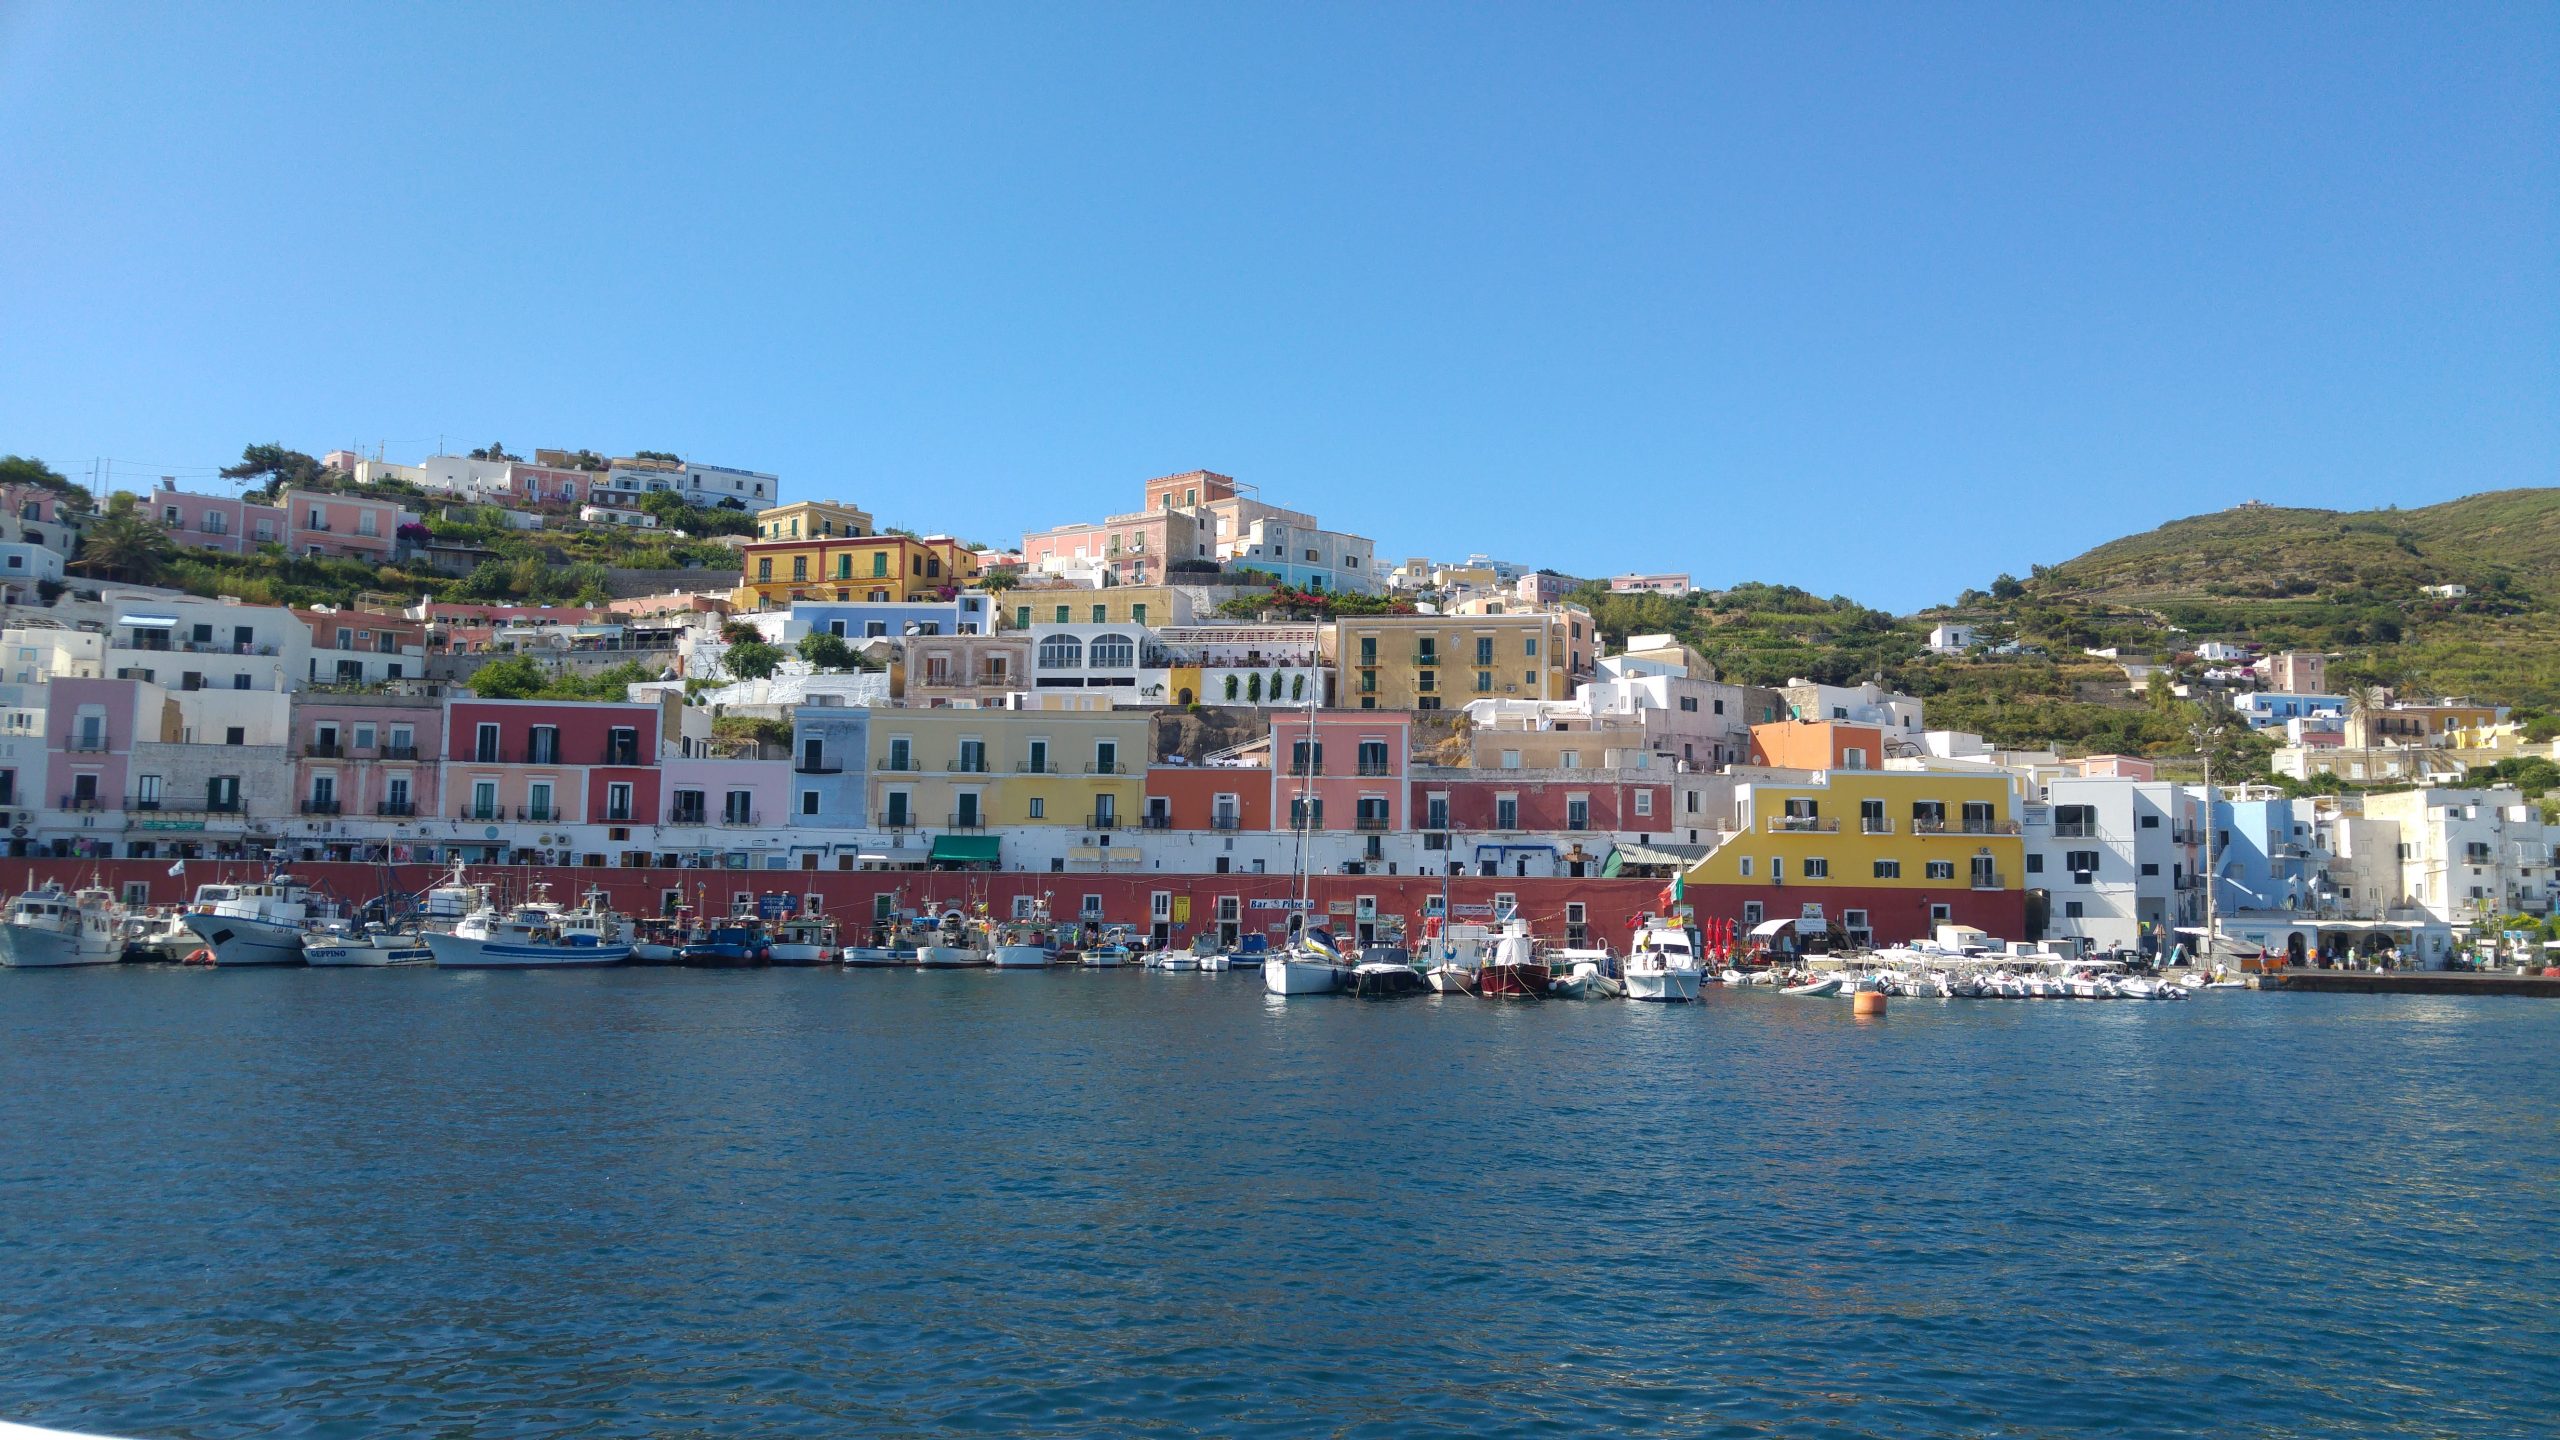 Porto dell'isola di Ponza e case colorate sul mare